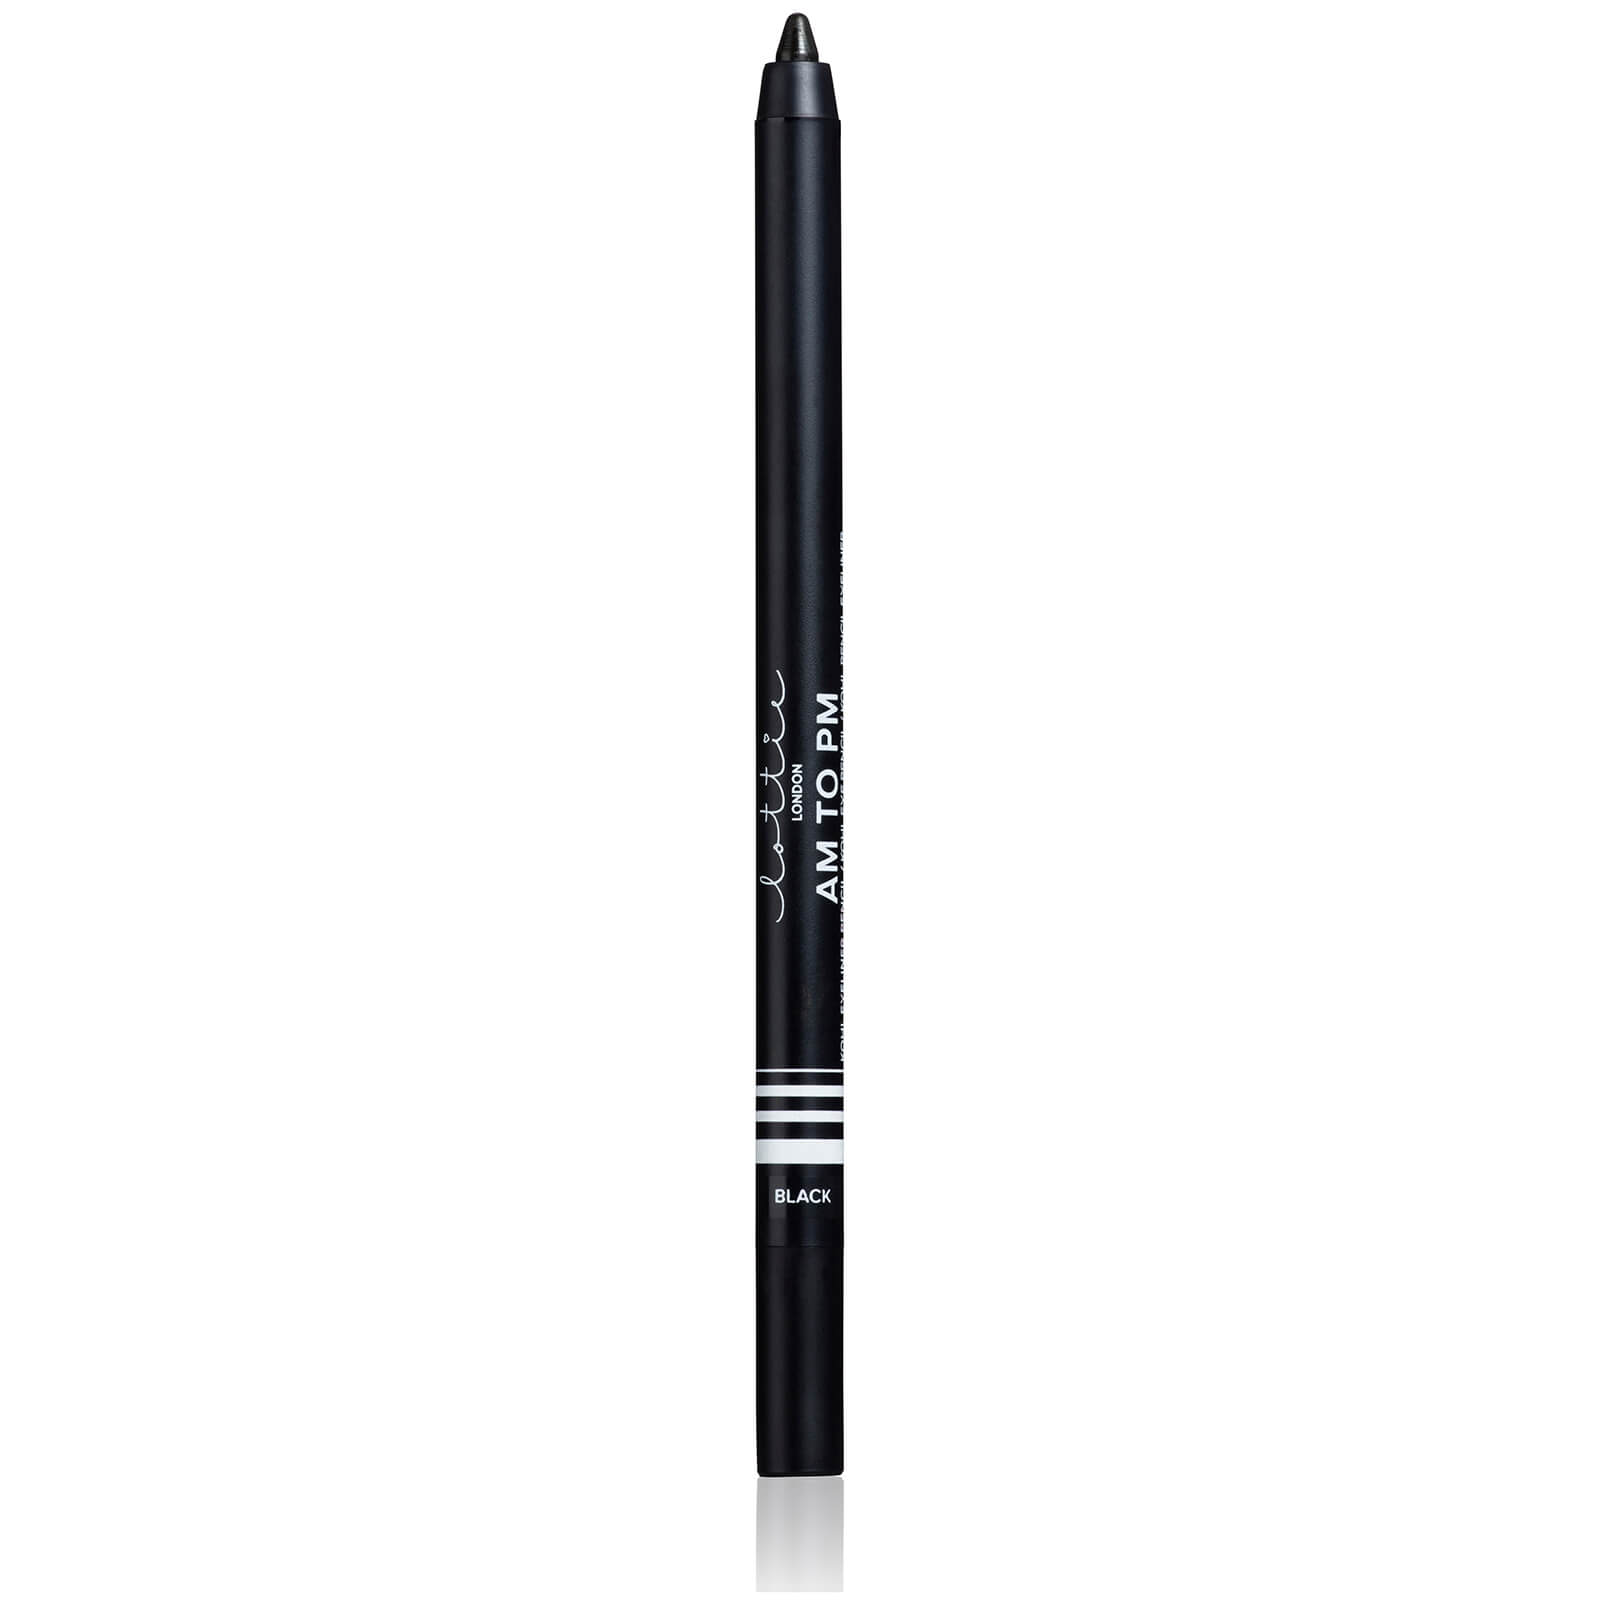 Стойкий карандаш для век Lottie London Longwear Kohl Eyeliner Pencil 9 г (различные оттенки) - Black